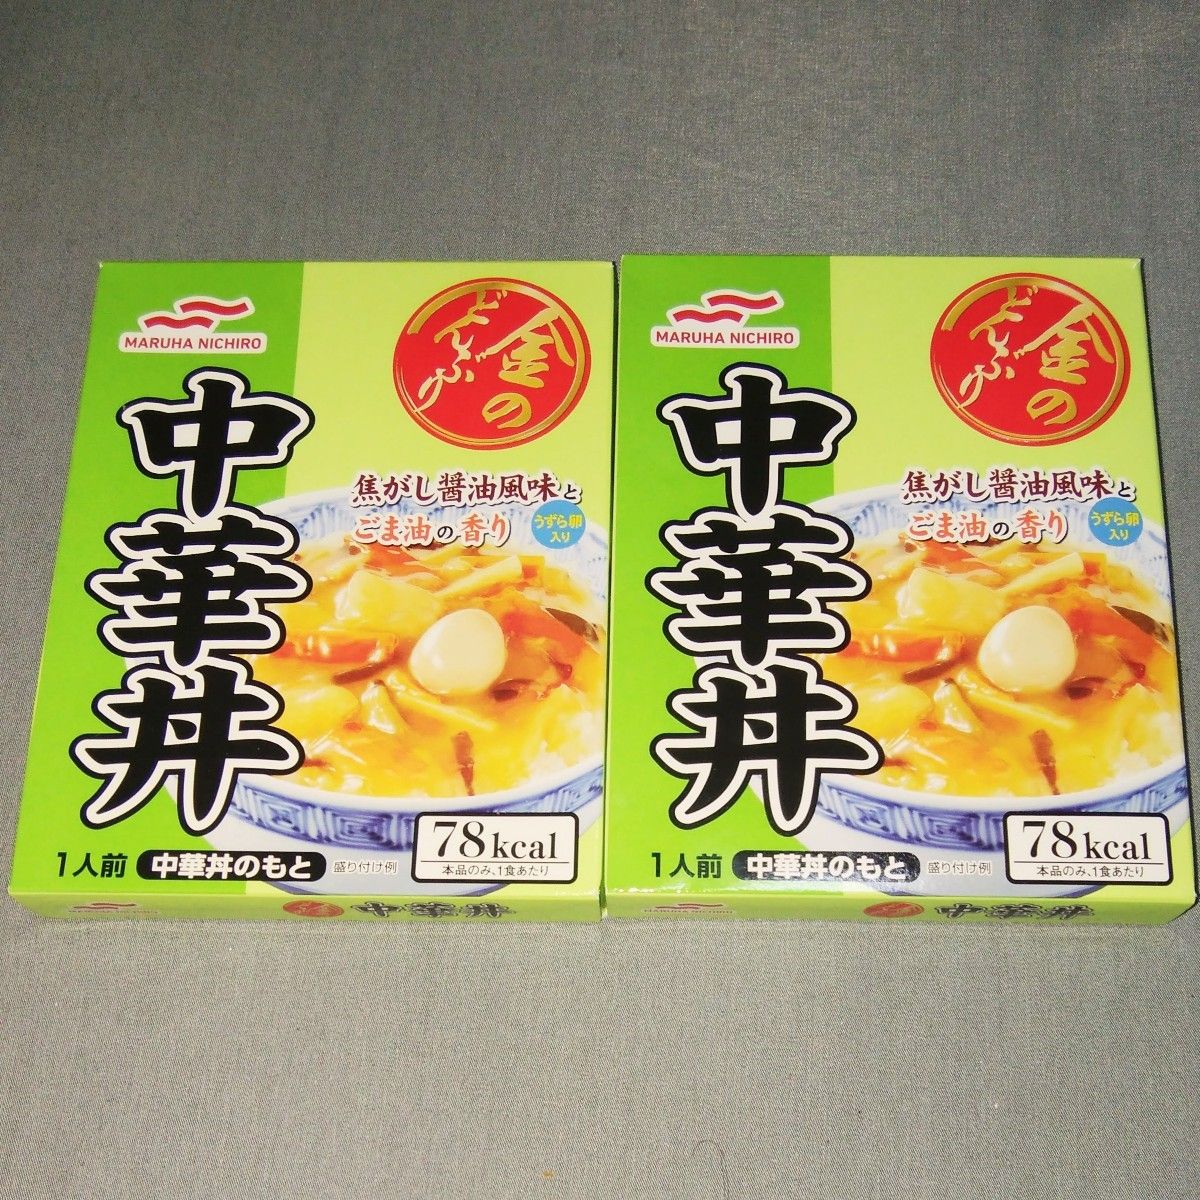 マルハニチロ： 金のどんぶり 中華丼 2パック  140g×2箱   レトルト食品